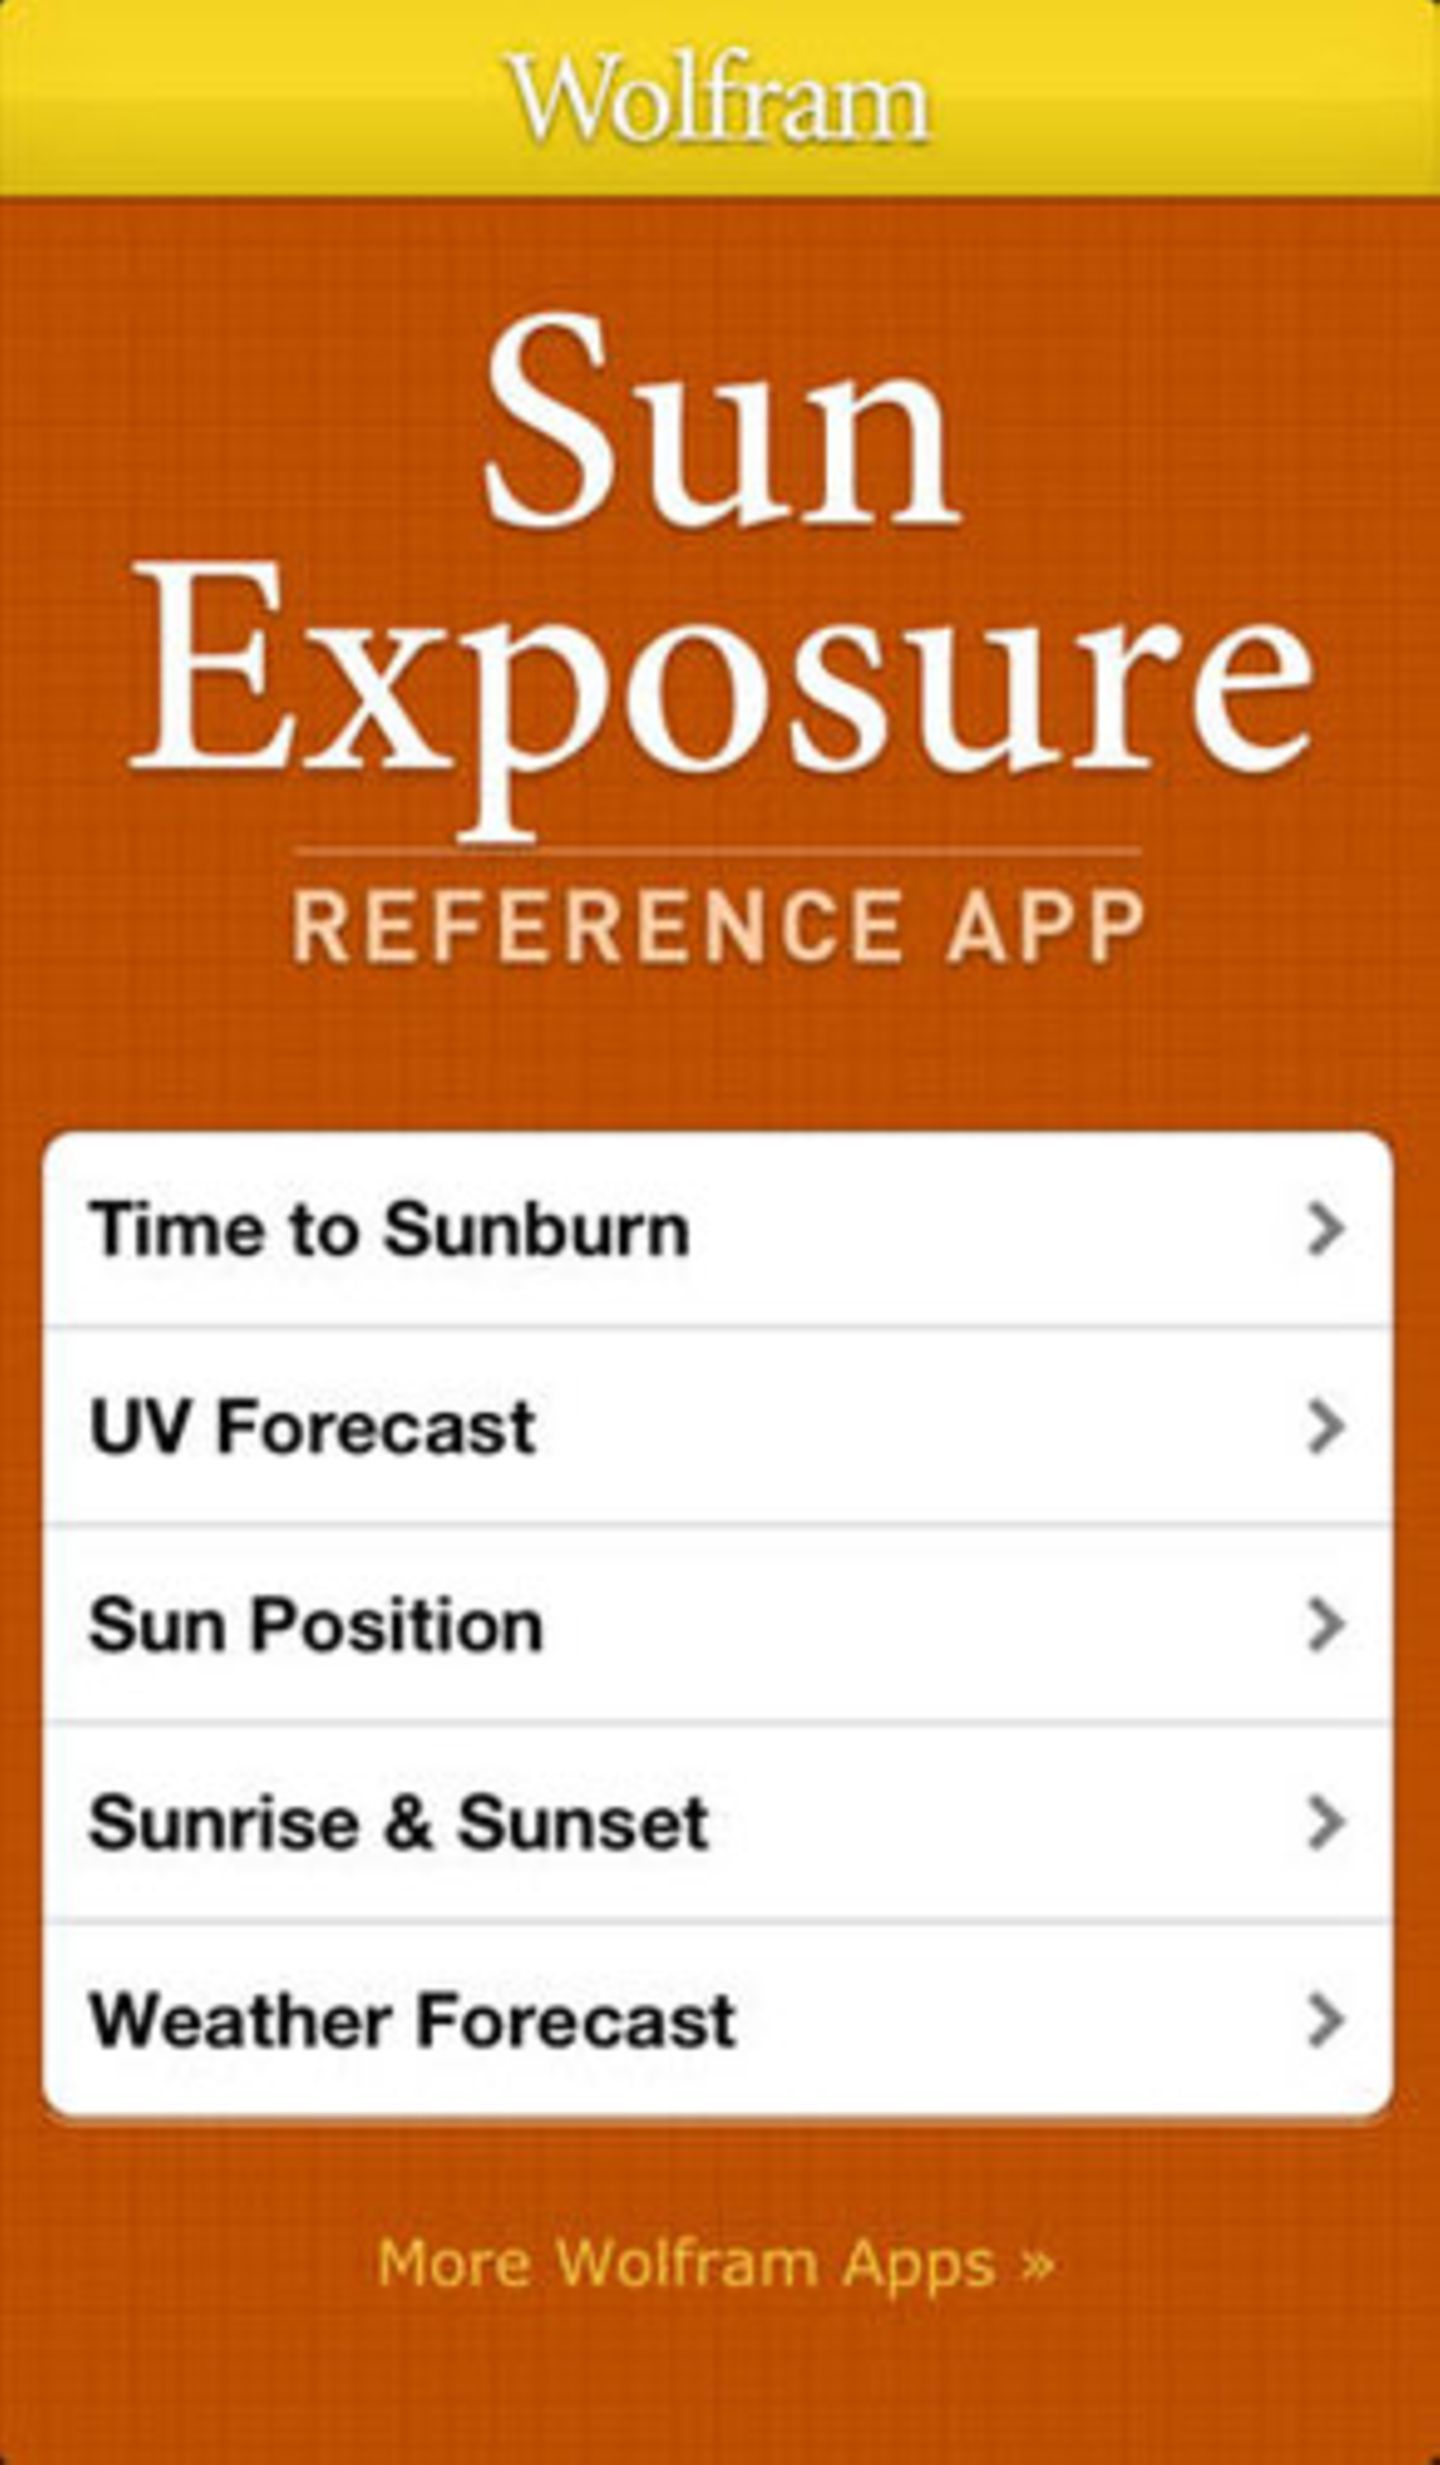 Nichts anbrennen lassen mit Wolfram Sun Exposure Reference